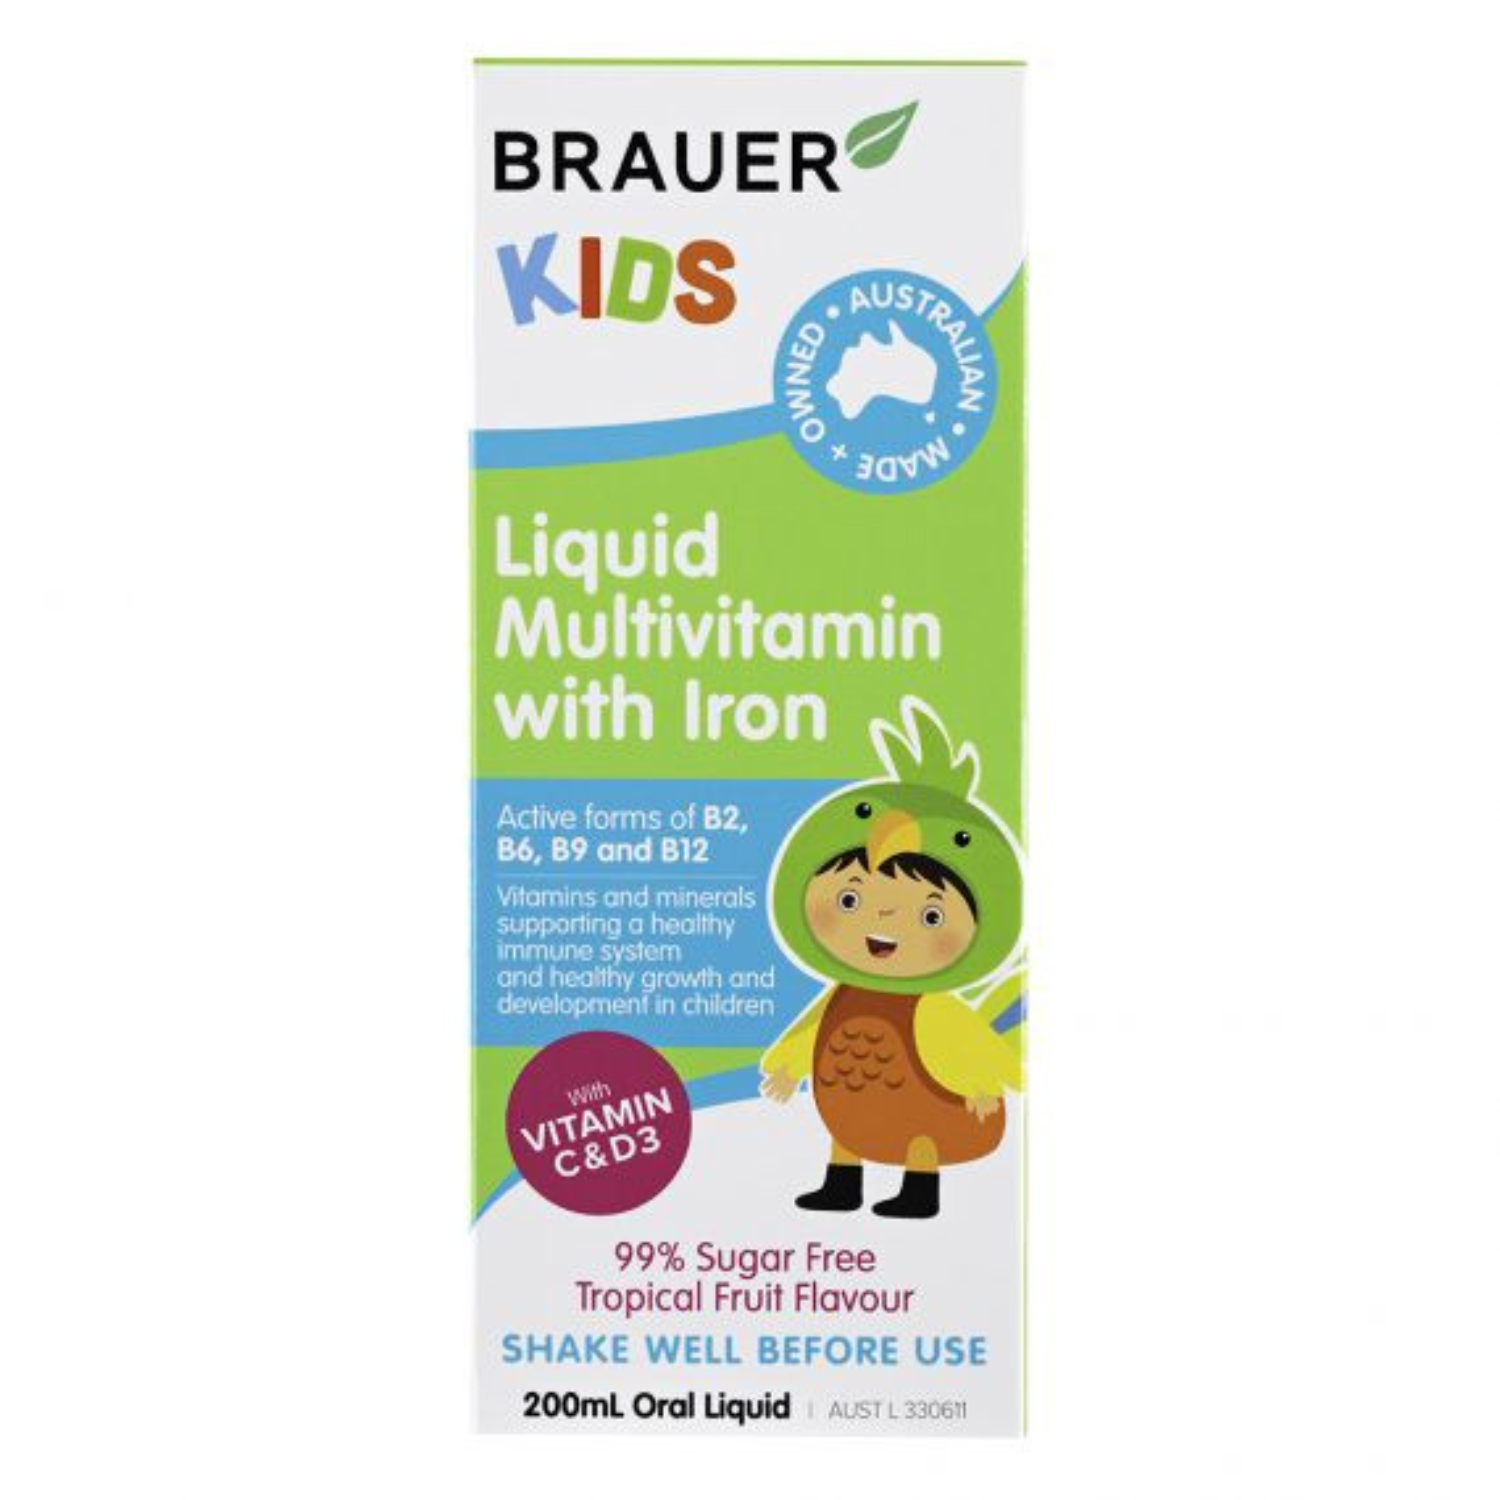 Brauer Kids Liquid Multivitamin with Iron, 200ml.